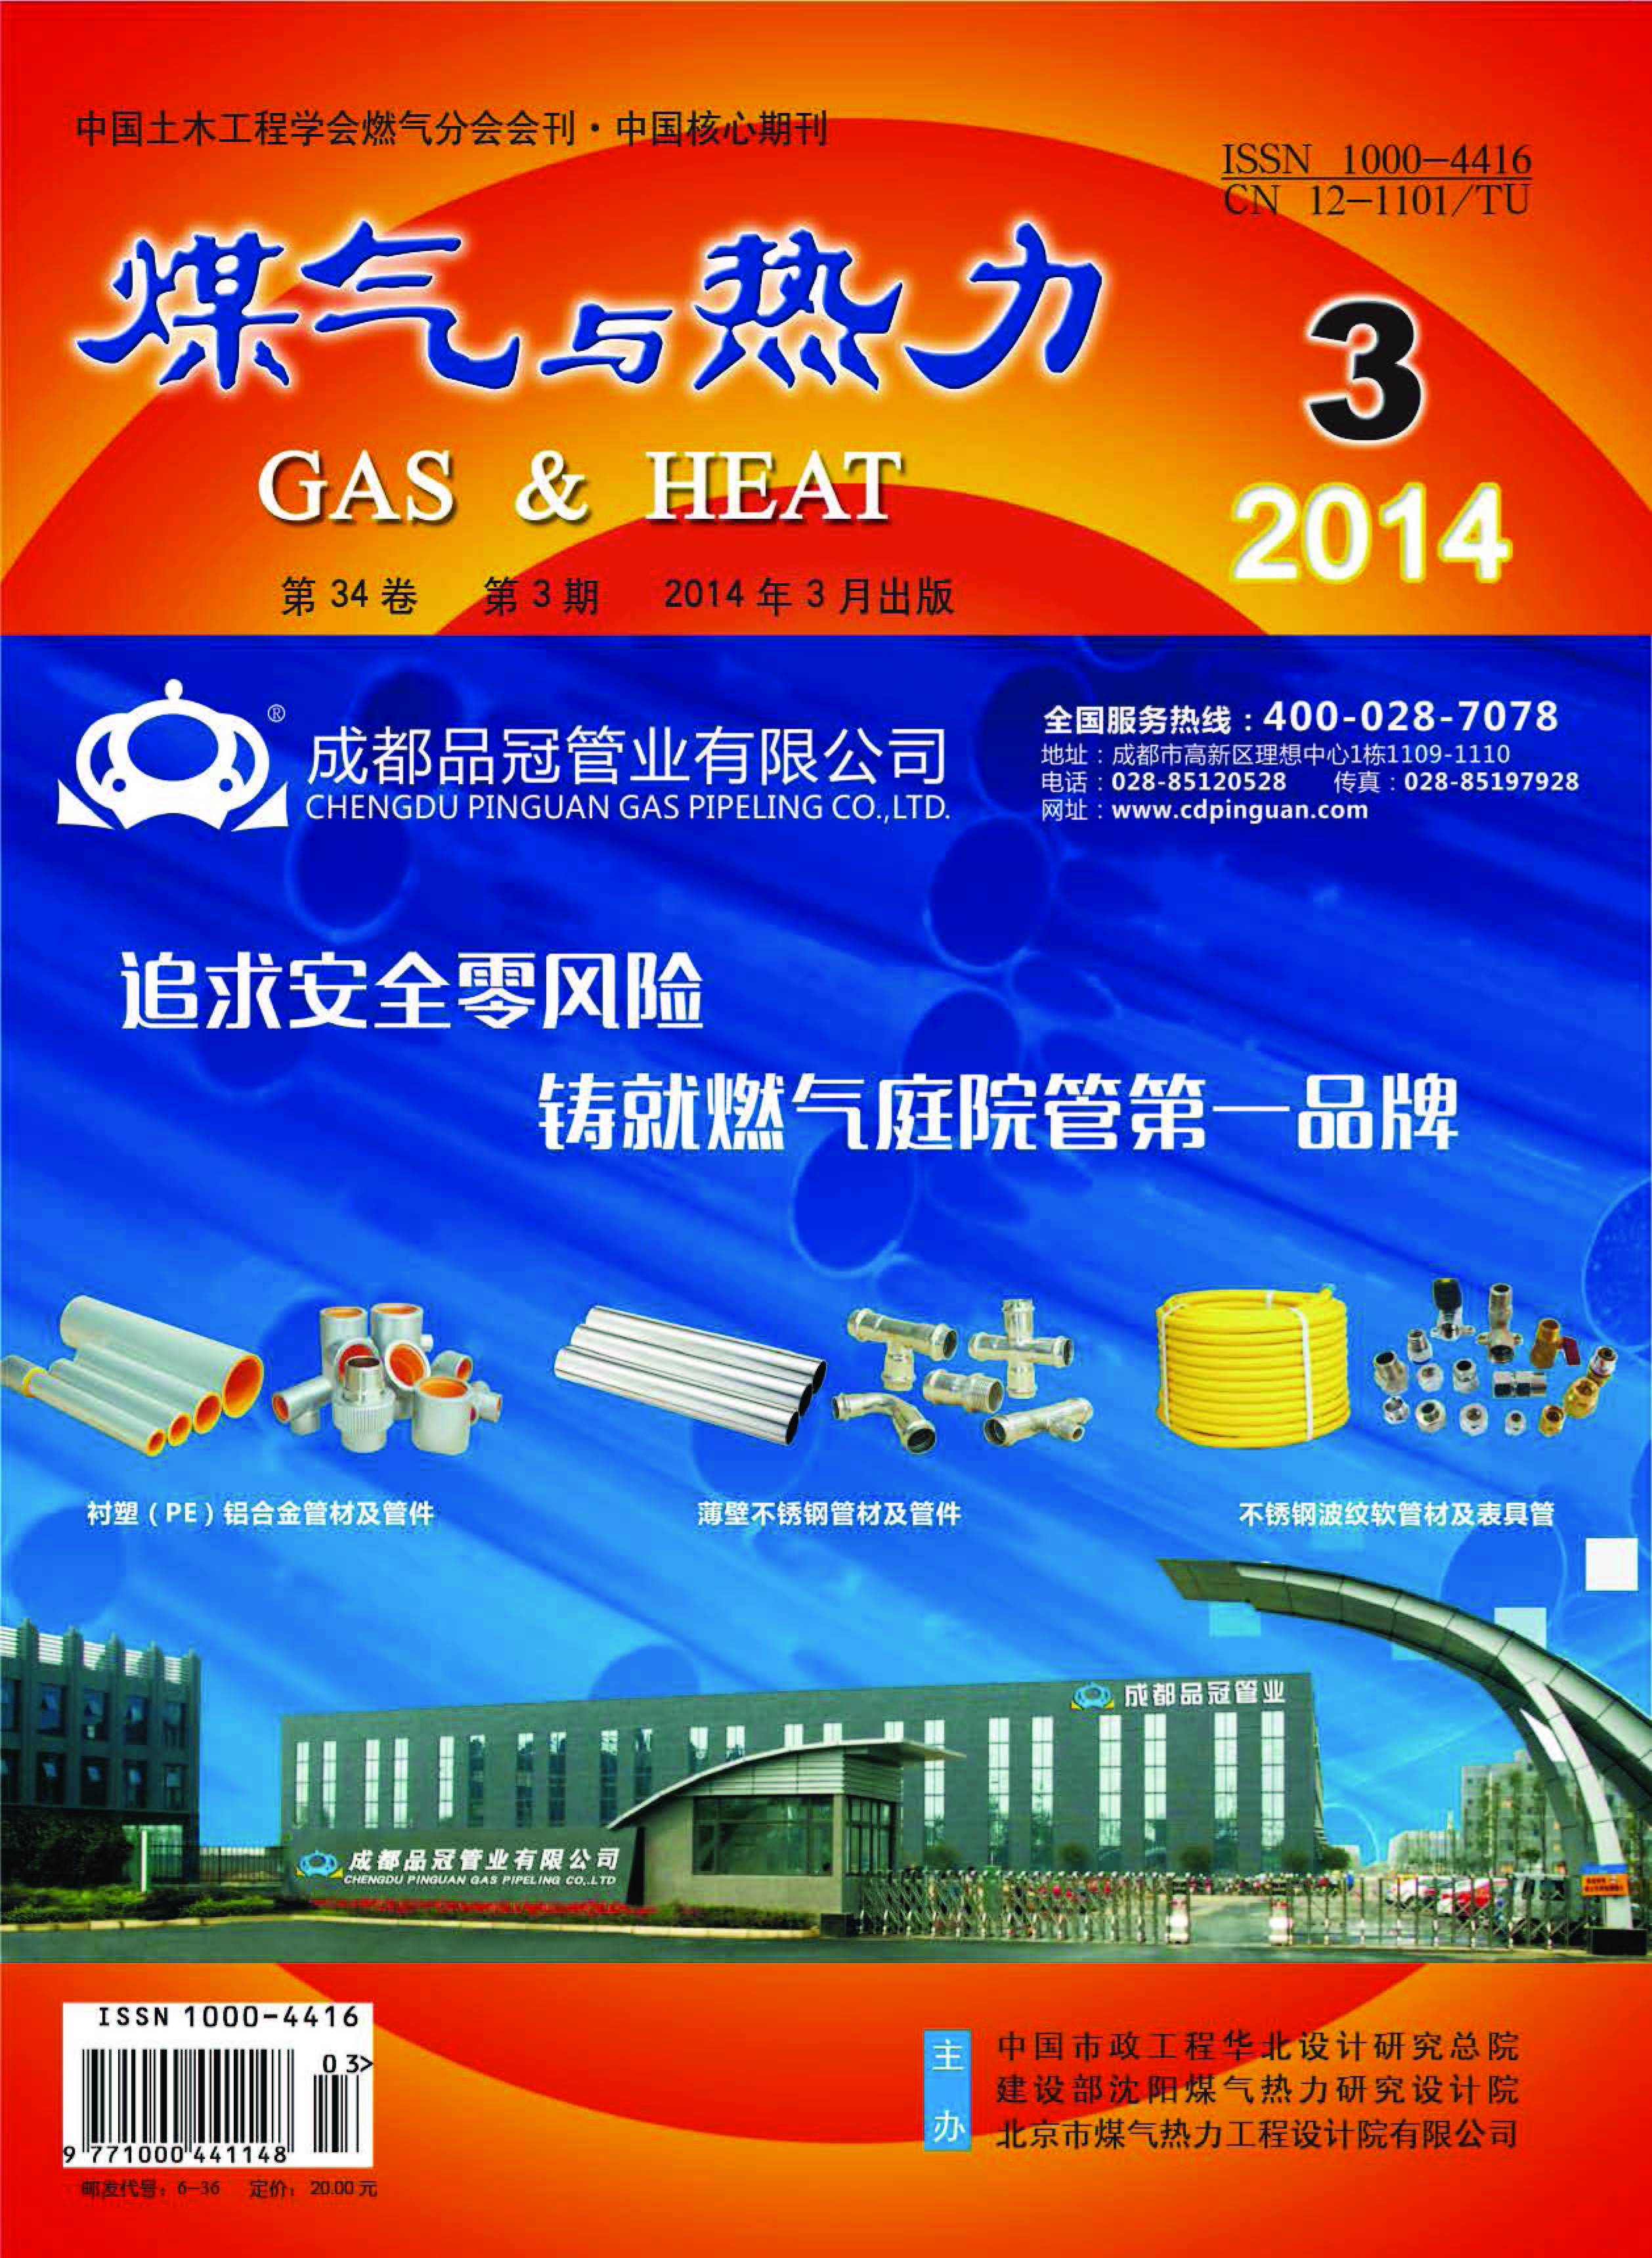 《煤气与热力》2014年3月刊